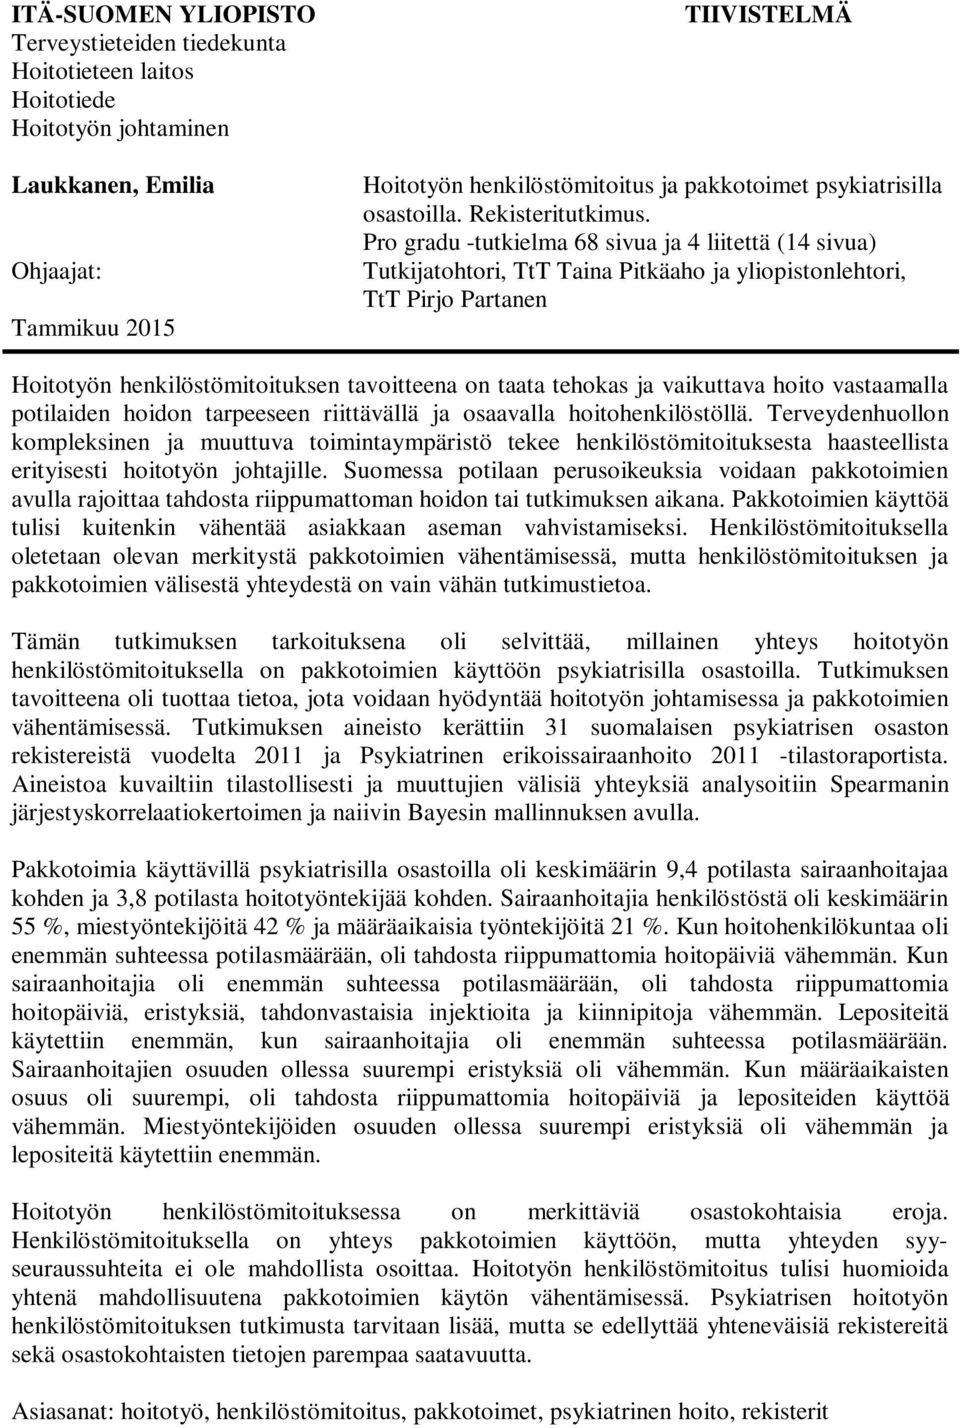 Pro gradu -tutkielma 68 sivua ja 4 liitettä (14 sivua) Tutkijatohtori, TtT Taina Pitkäaho ja yliopistonlehtori, TtT Pirjo Partanen Hoitotyön henkilöstömitoituksen tavoitteena on taata tehokas ja